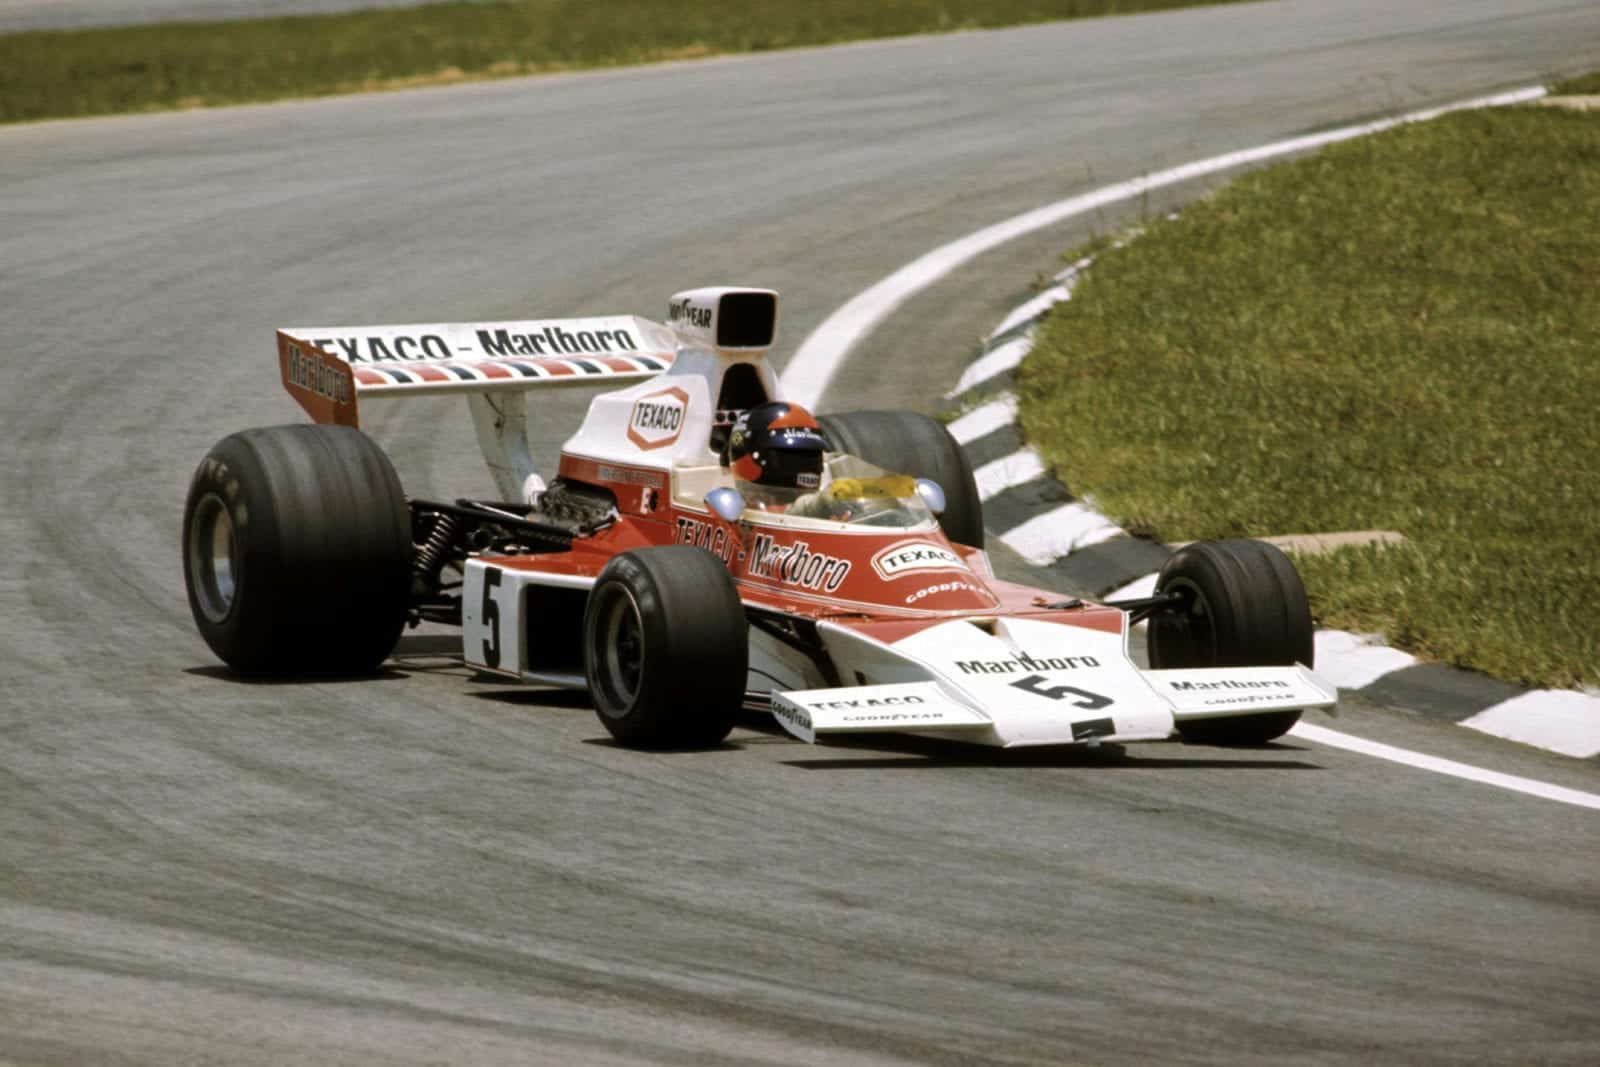 Emerson Fittipaldi driving for McLAre at the 1974 Brazilian Grand Prix, Interlagos.